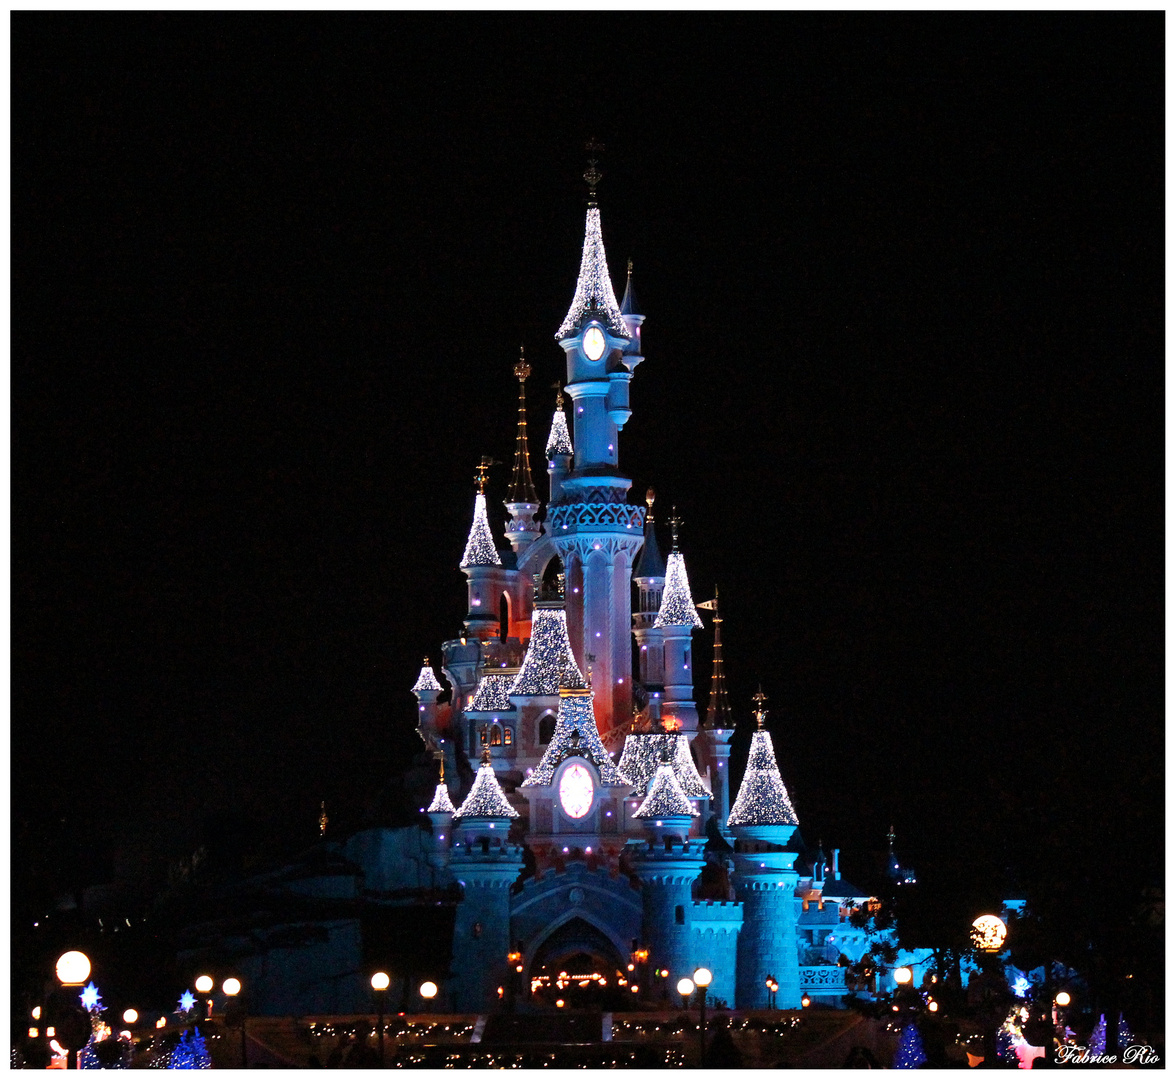 Château de la Belle au bois dormant - Disneyland Paris